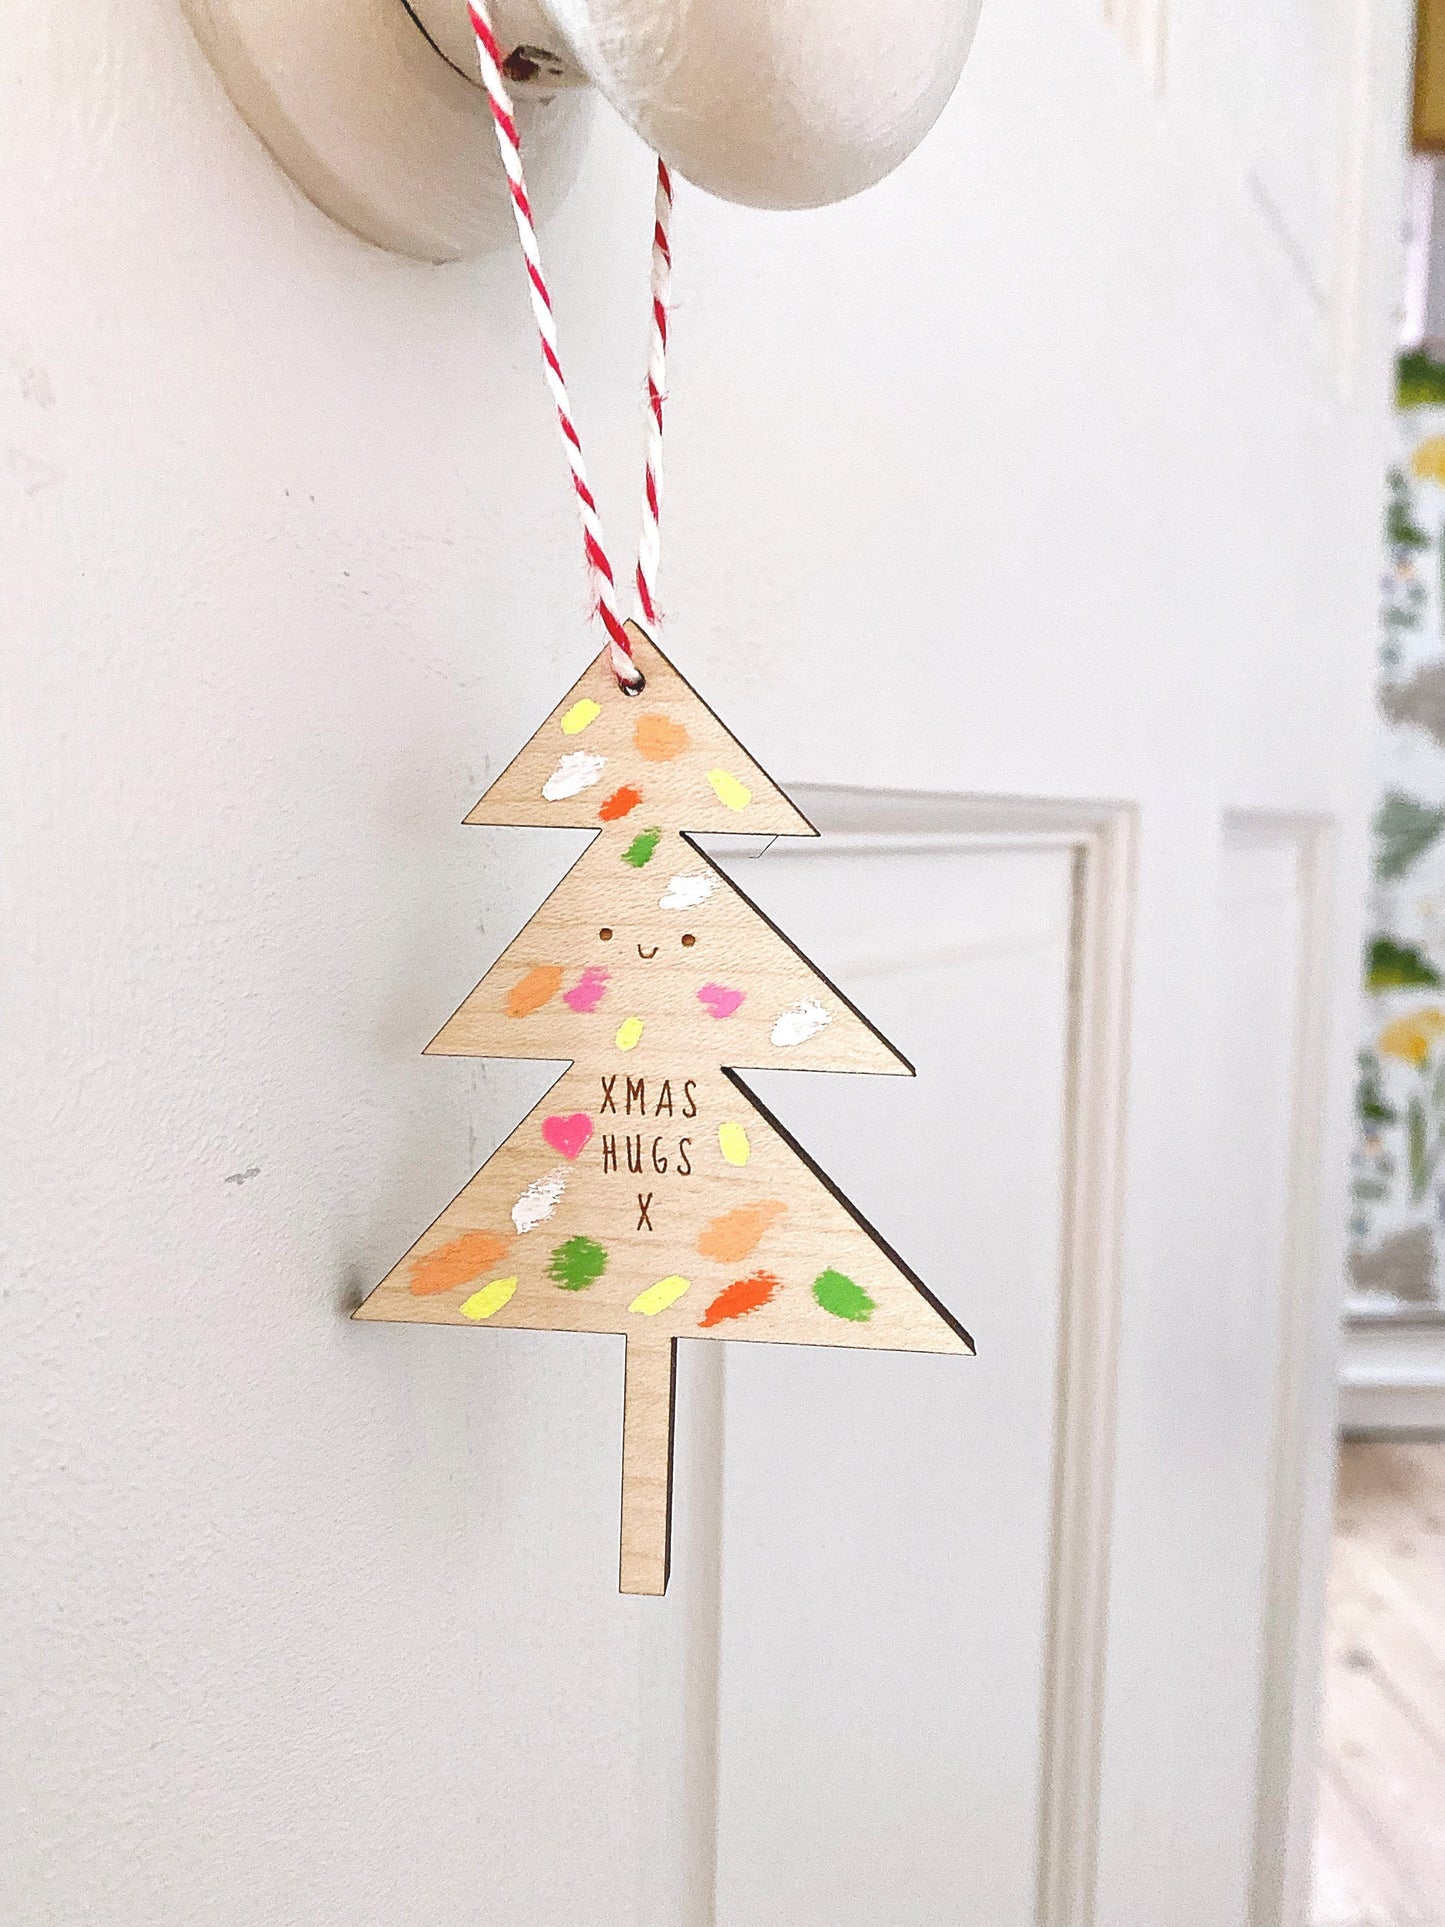 Christmas hug tree / Christmas decoration /